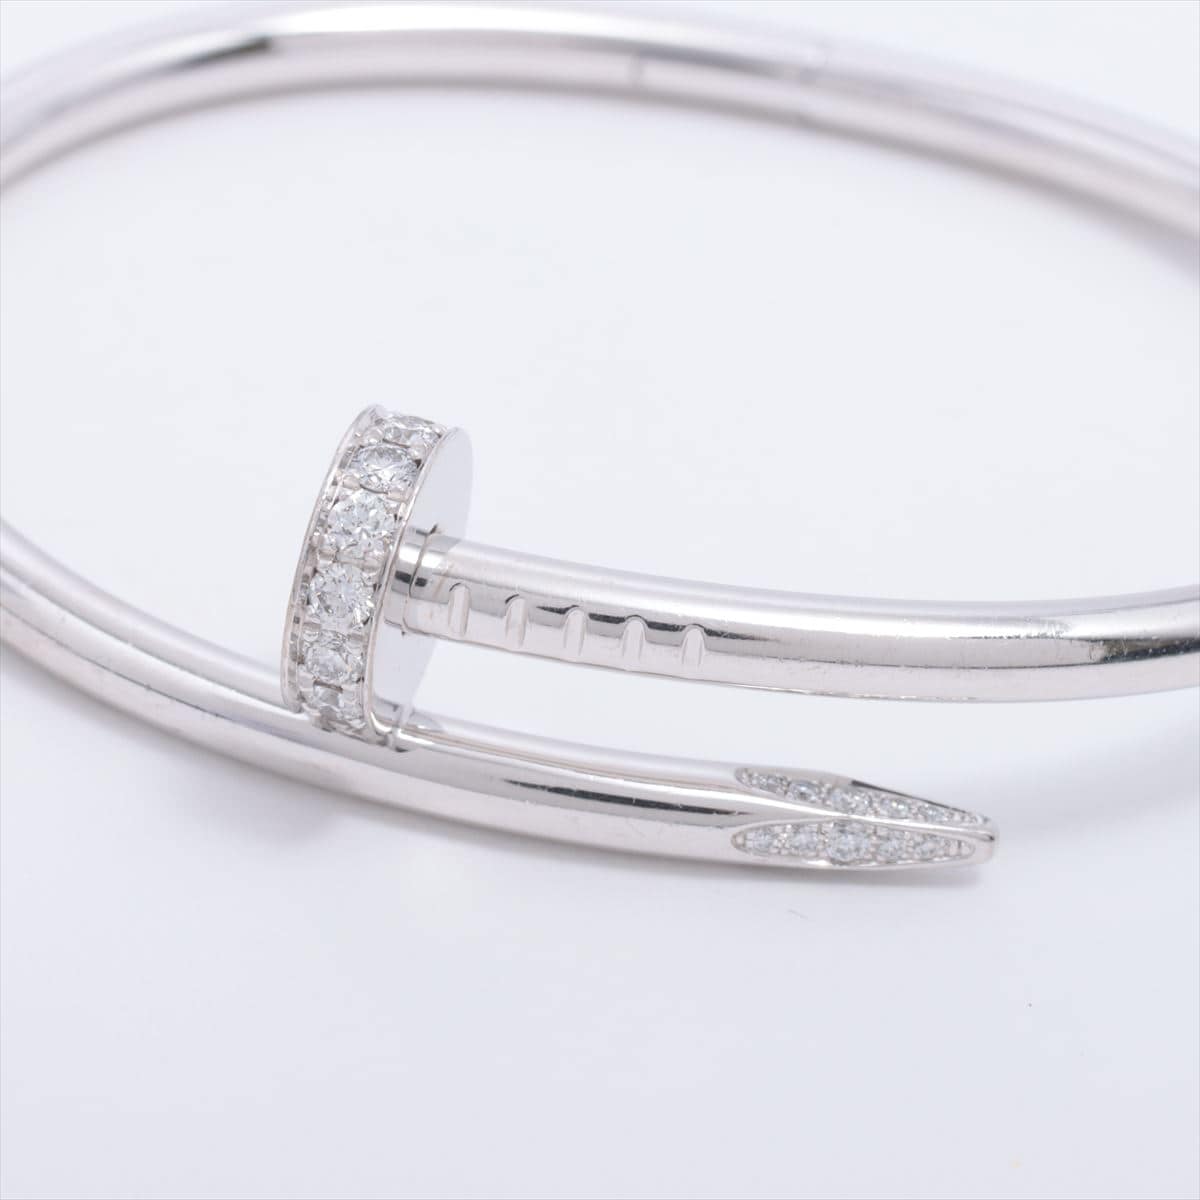 Cartier Juste un Clou diamond Bracelet 750 WG 32.1g 16